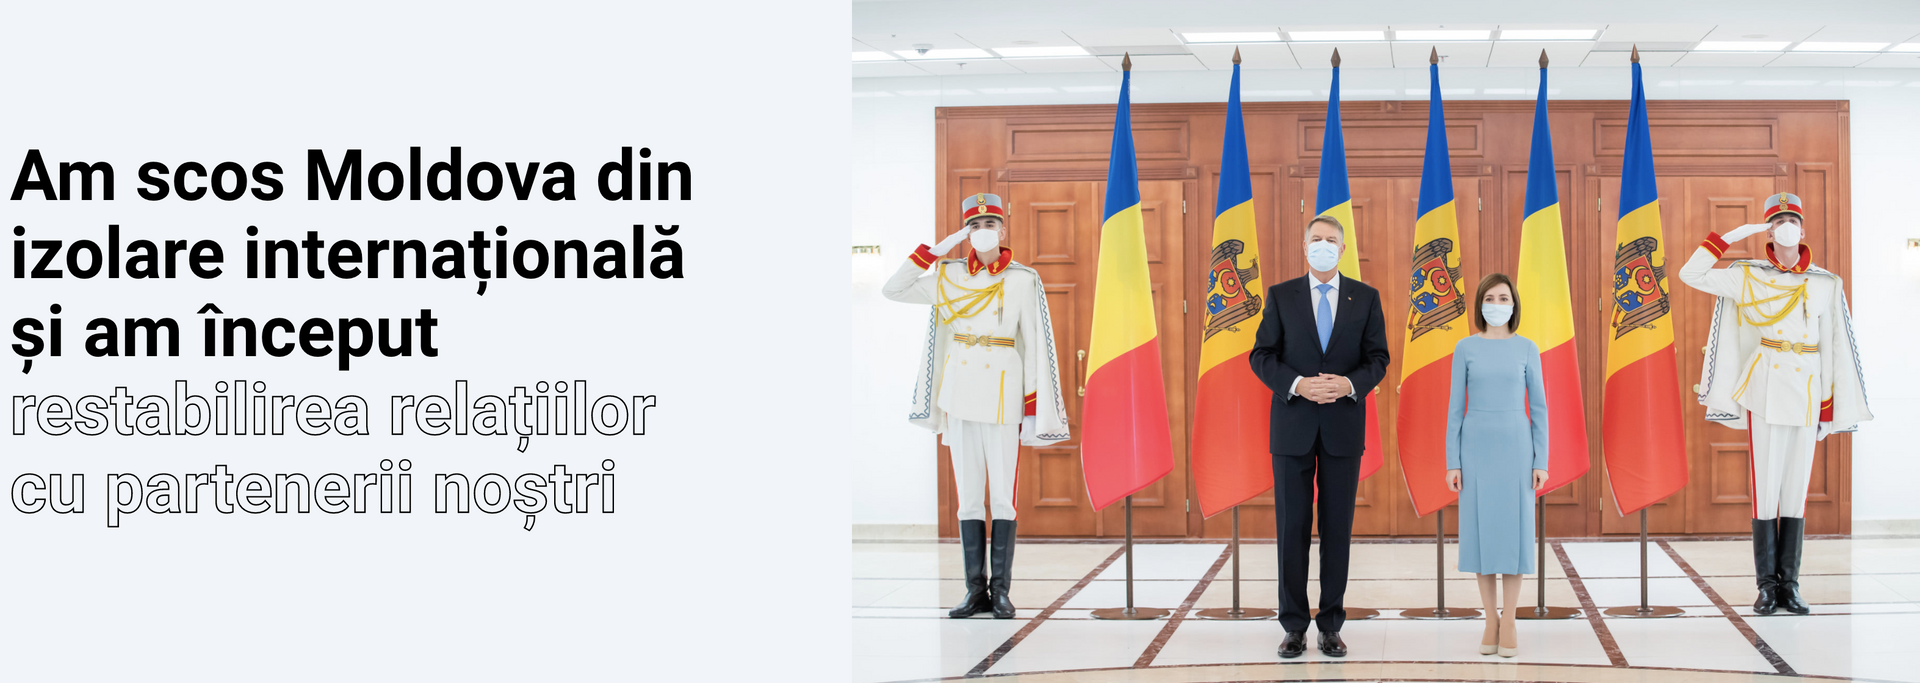 Санду отчиталась о 44 достижениях после 100 дней в кресле президента - Sputnik Молдова, 1920, 02.04.2021